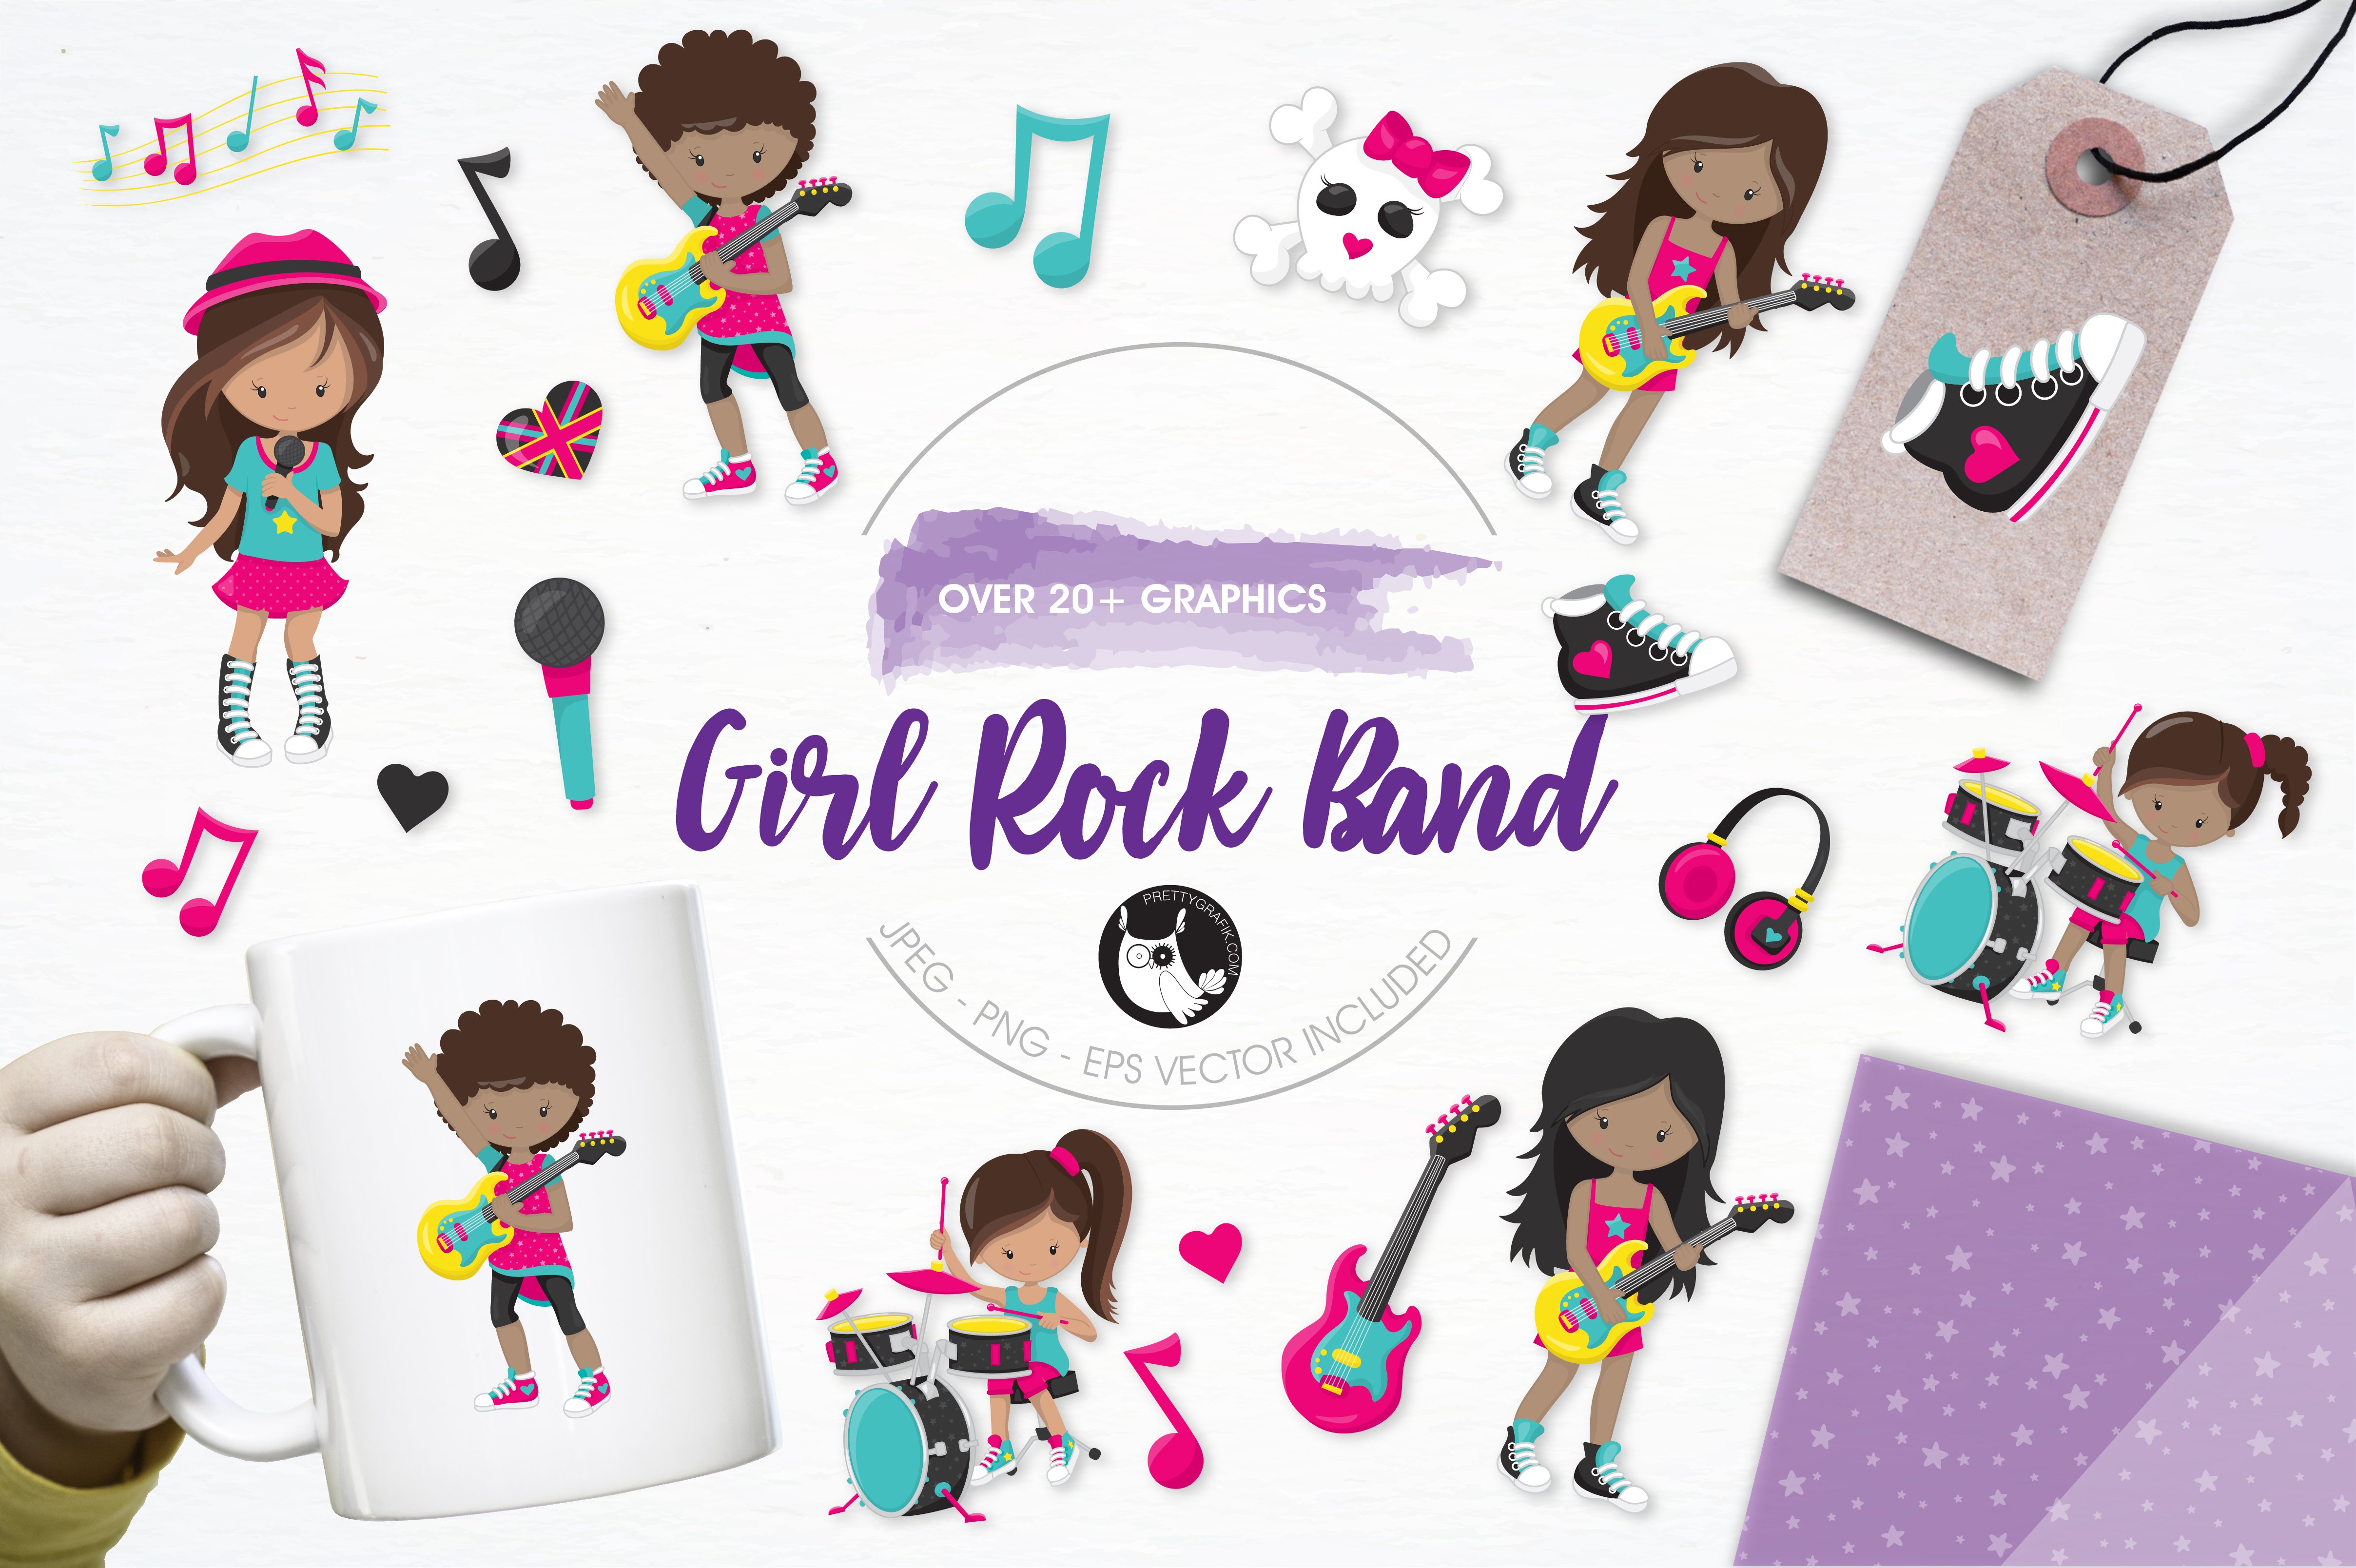 Girl Rock Band Illustration Pack - Vector Image